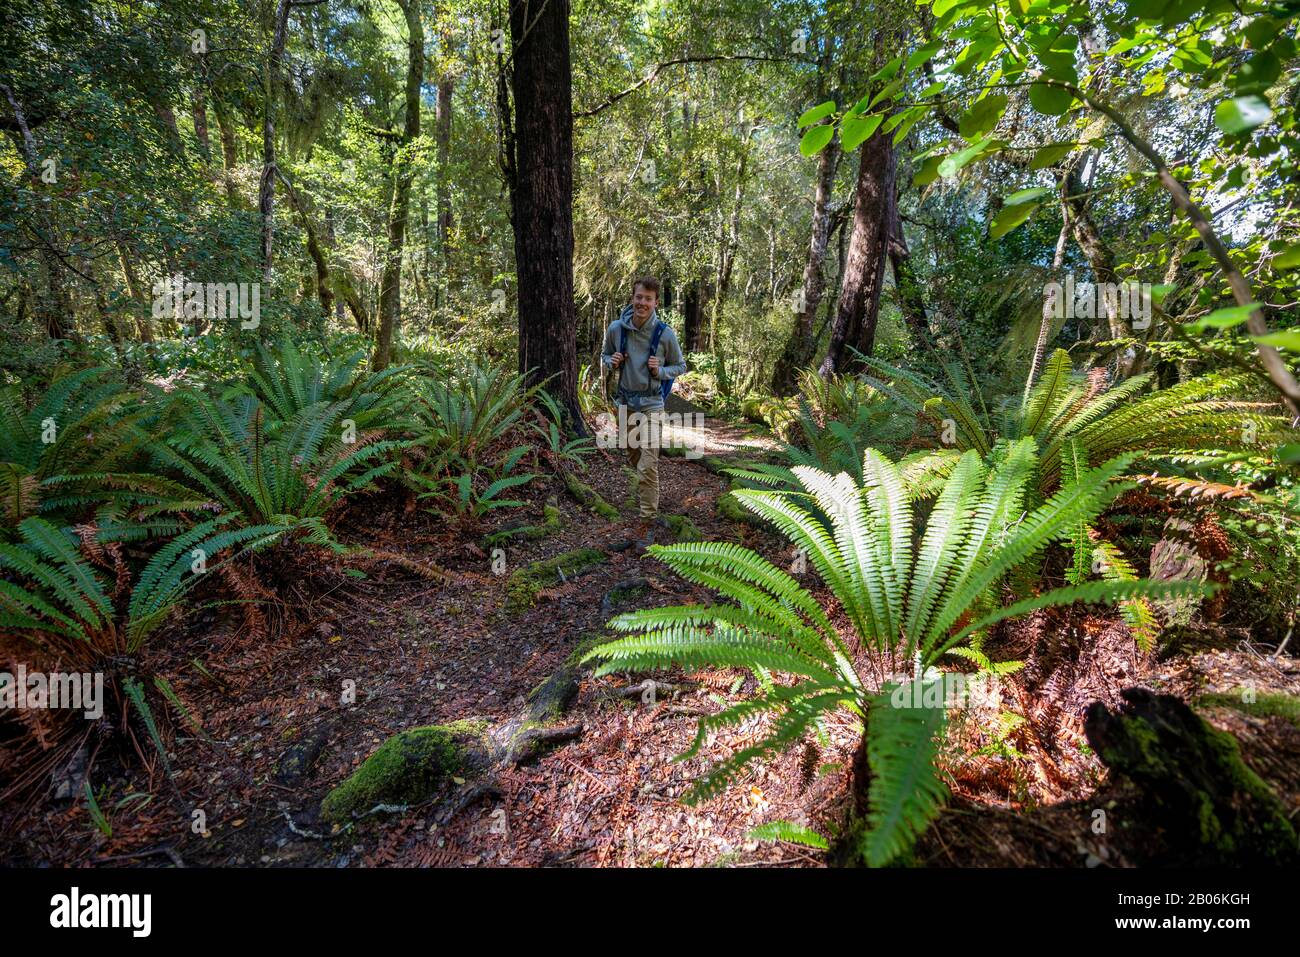 Randonneurs dans la jungle avec de grandes fougères, près du lac Rotoroa, du parc national des lacs Nelson, de la région de Tasman, de l'île du Sud, de la Nouvelle-Zélande Banque D'Images